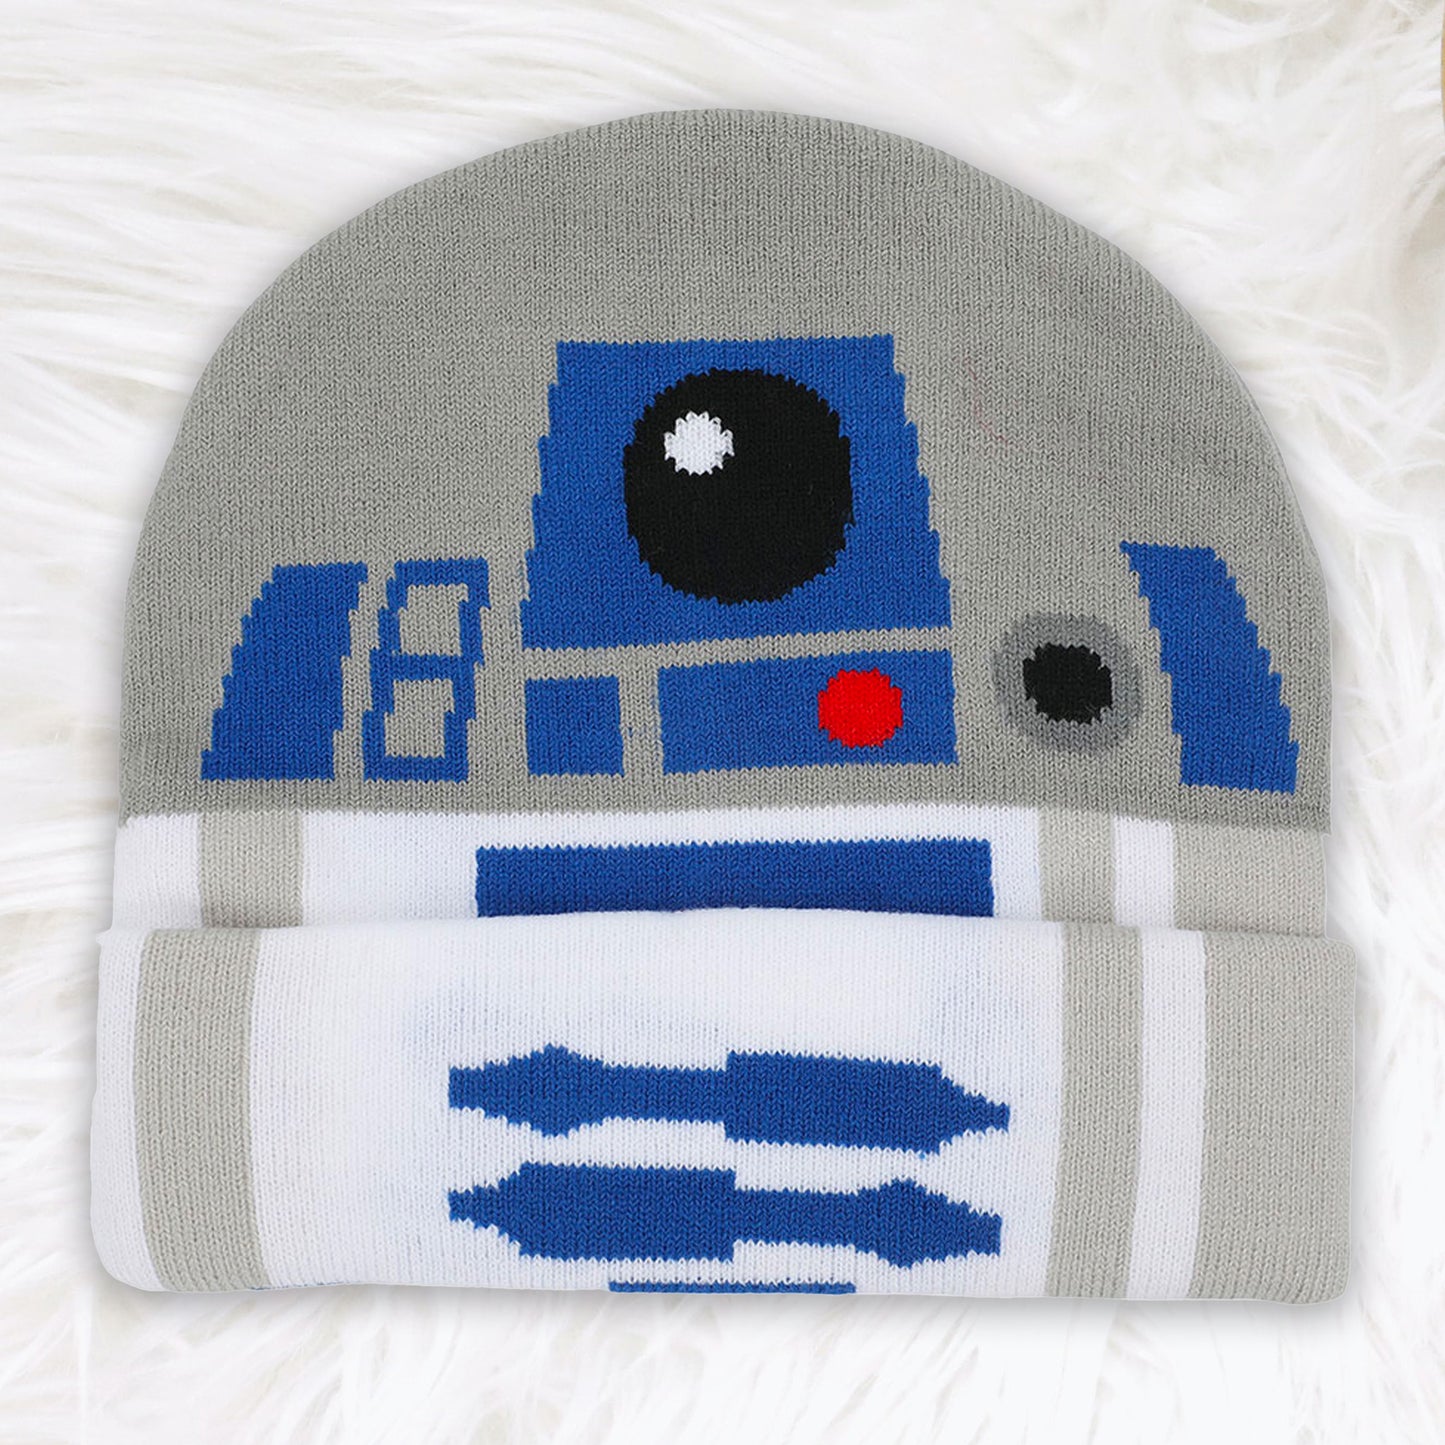 R2-D2 (Star Wars) Cuff Beanie Hat